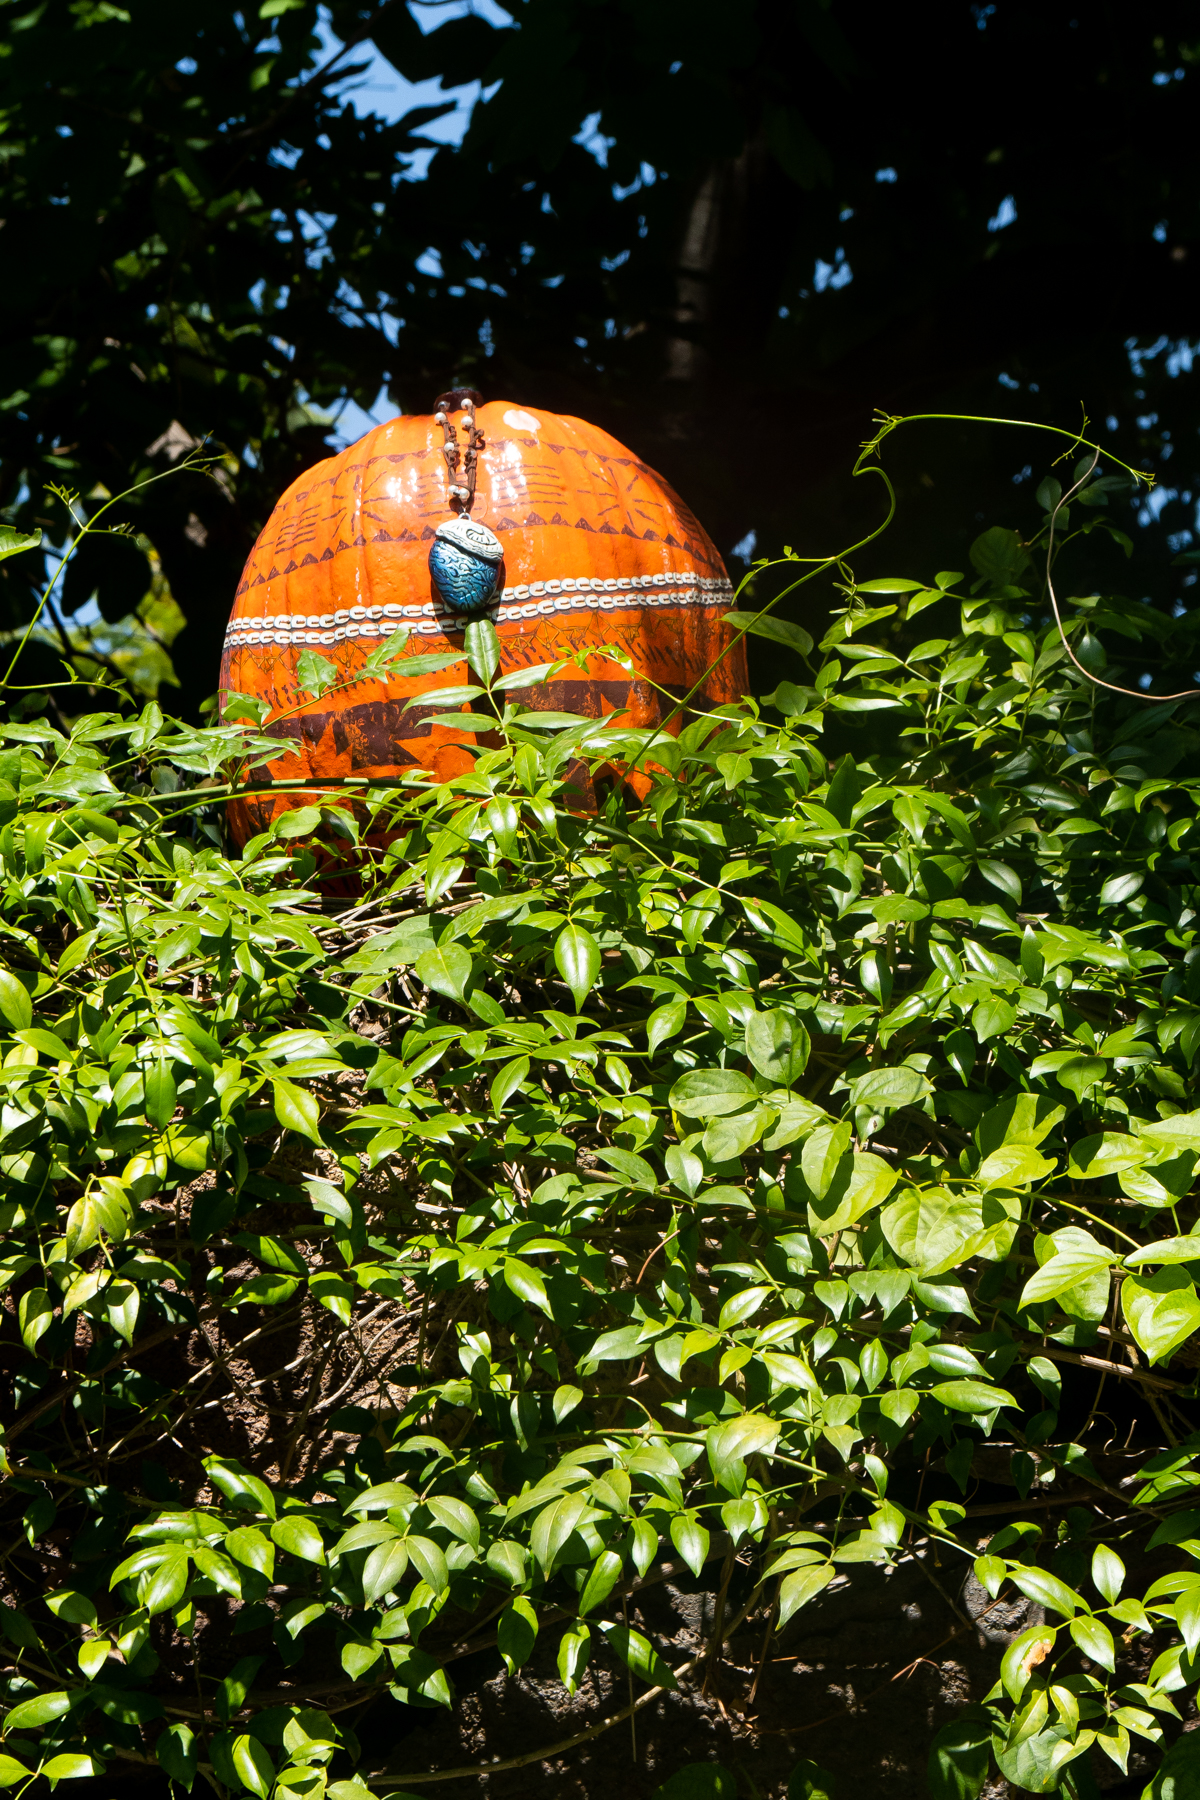 Moana Pumpkin in Downtown Disney